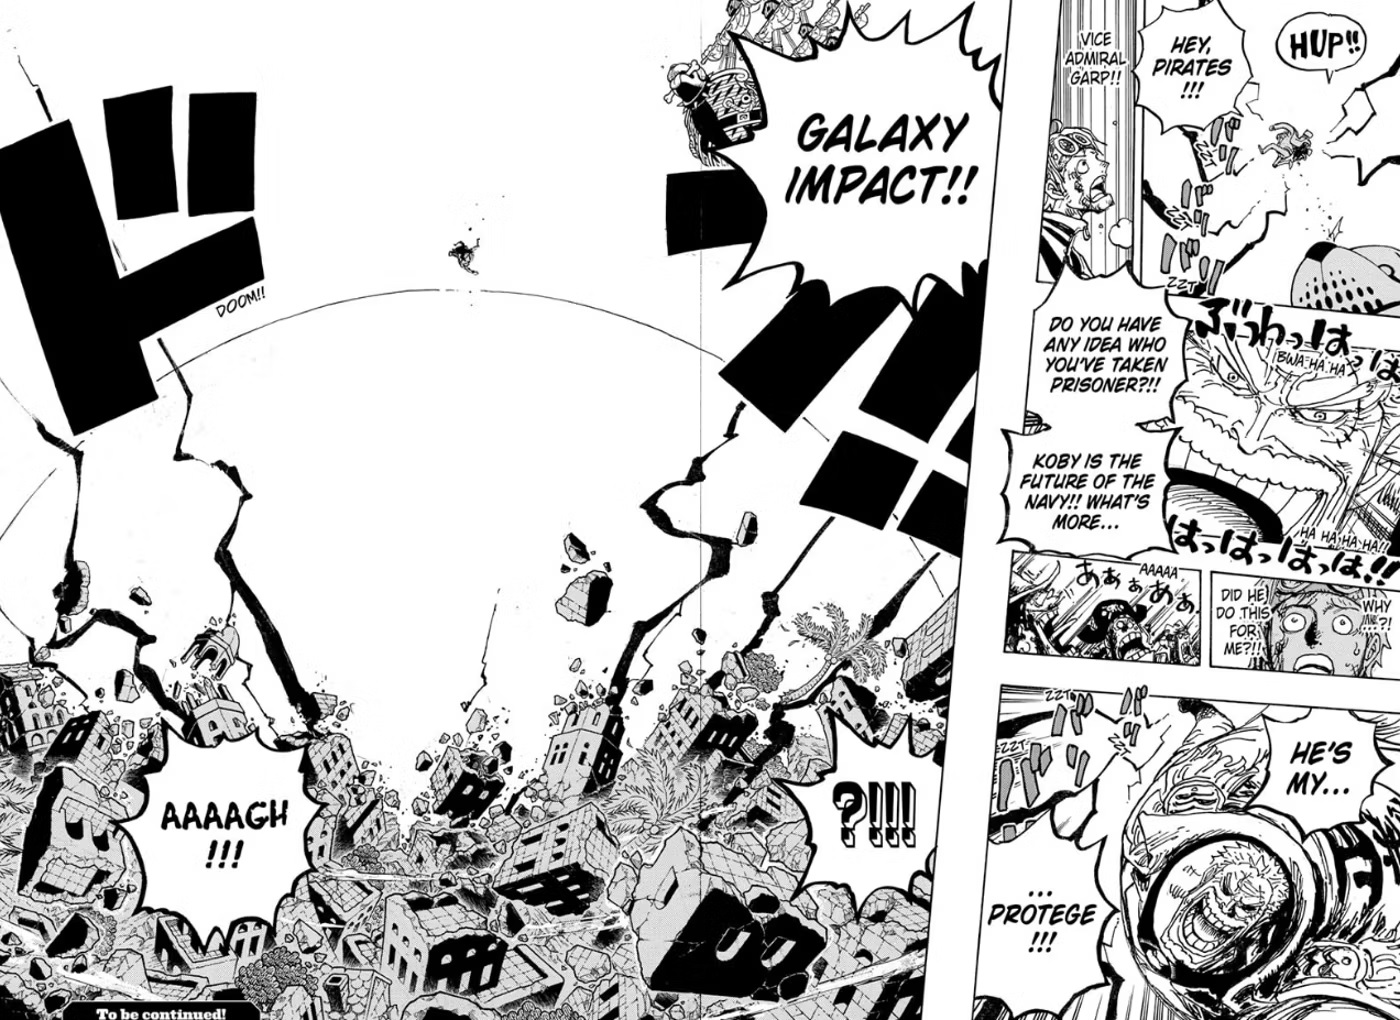 One Piece: As Habilidades Mais Fortes do Barba Negra, Ranqueadas